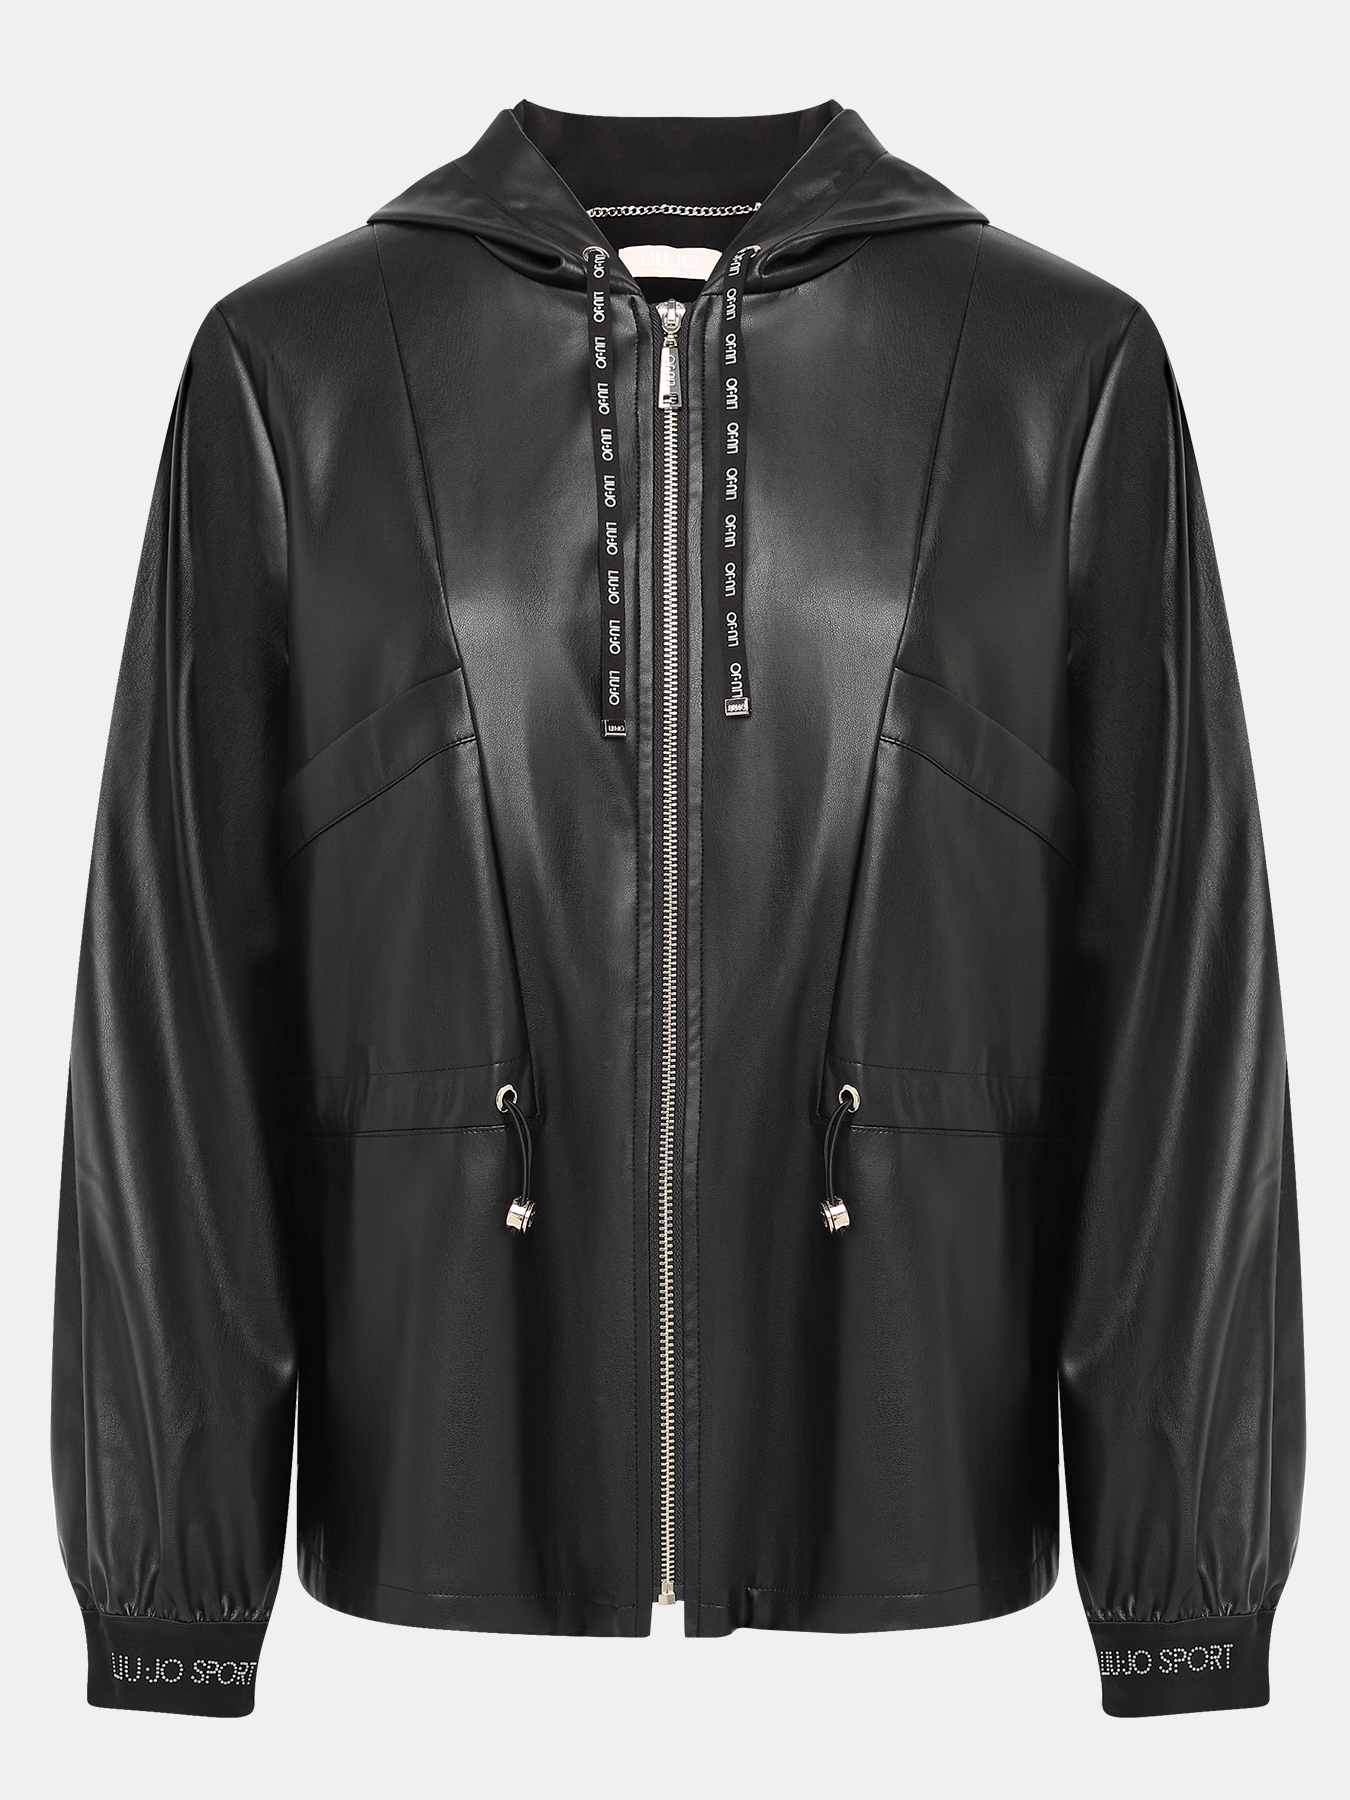 Куртка Liu Jo Sport 414791-042, цвет черный, размер 42-44